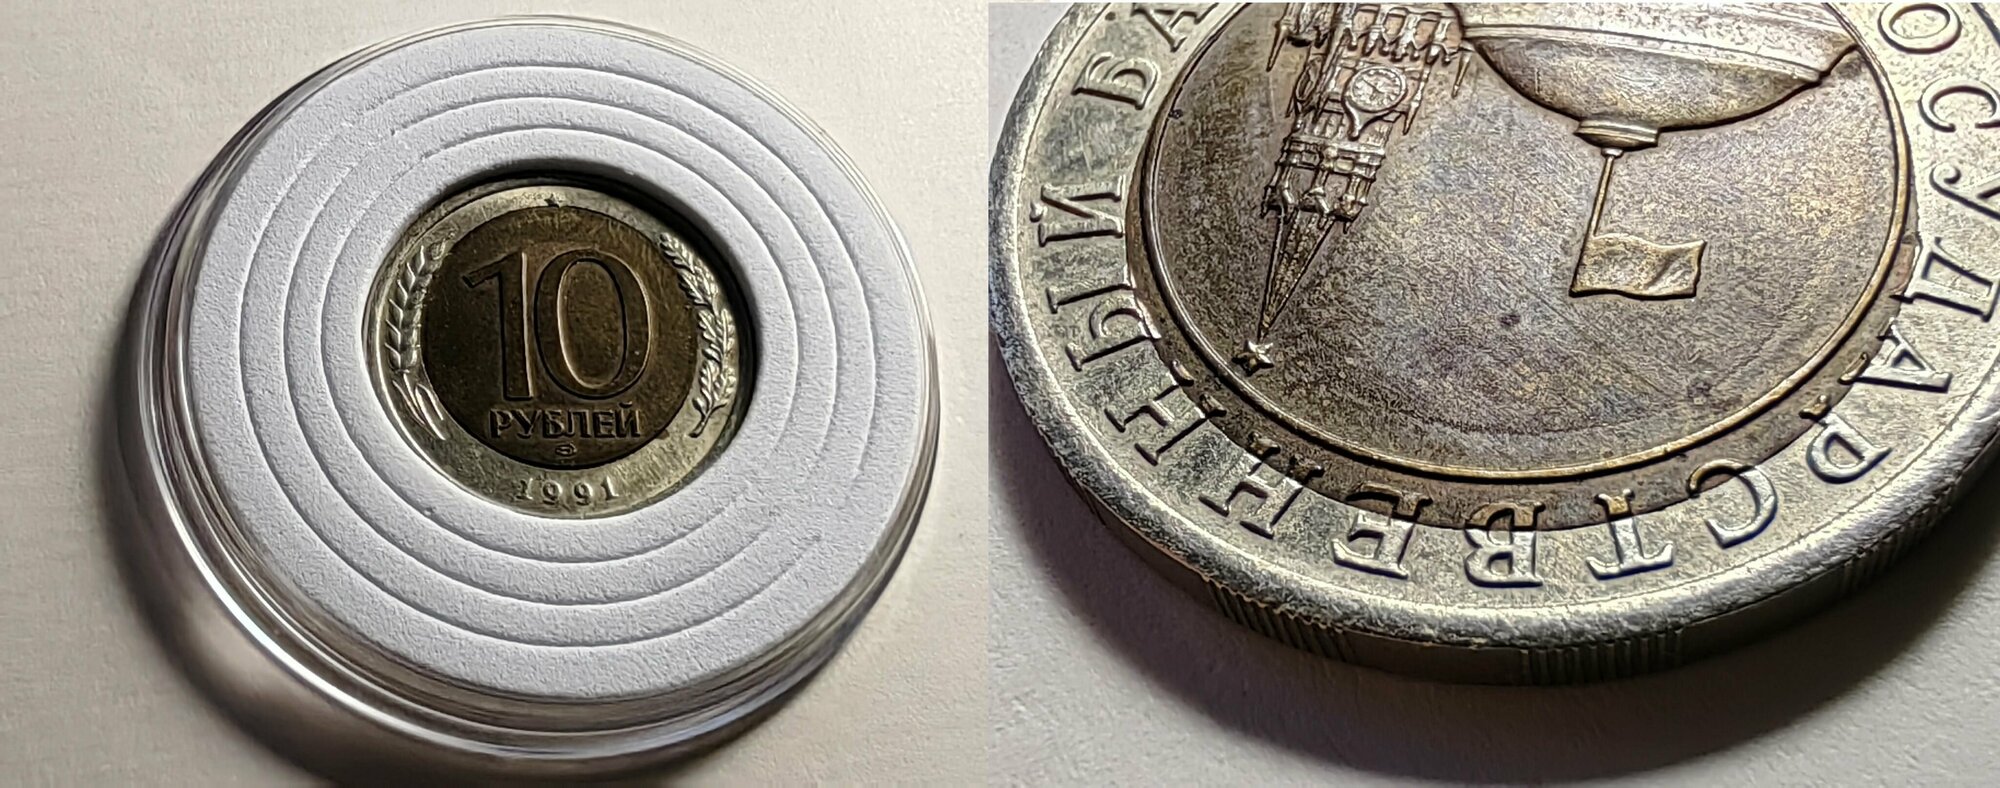 10 рублей 1991 год ЛМД . Монетный брак чеканки / Смещение вставки